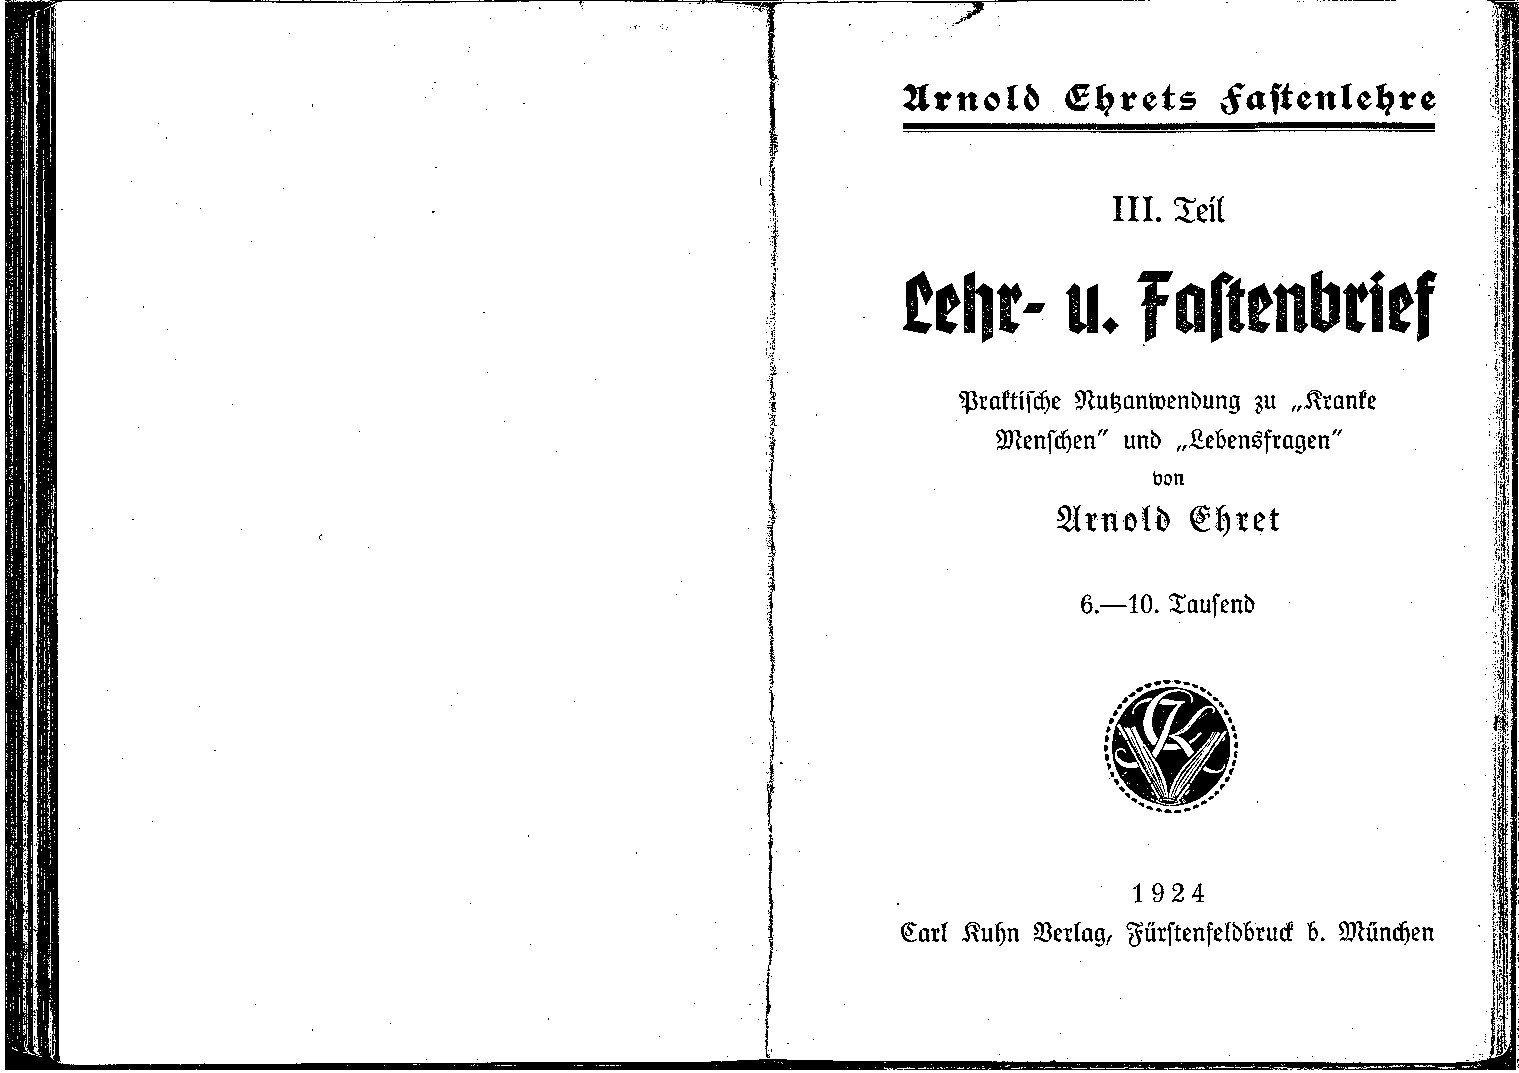 Fastenlehre - III. Teil - Lehr- und Fastenbrief (1924, 11 Doppels., Scan, Fraktur)